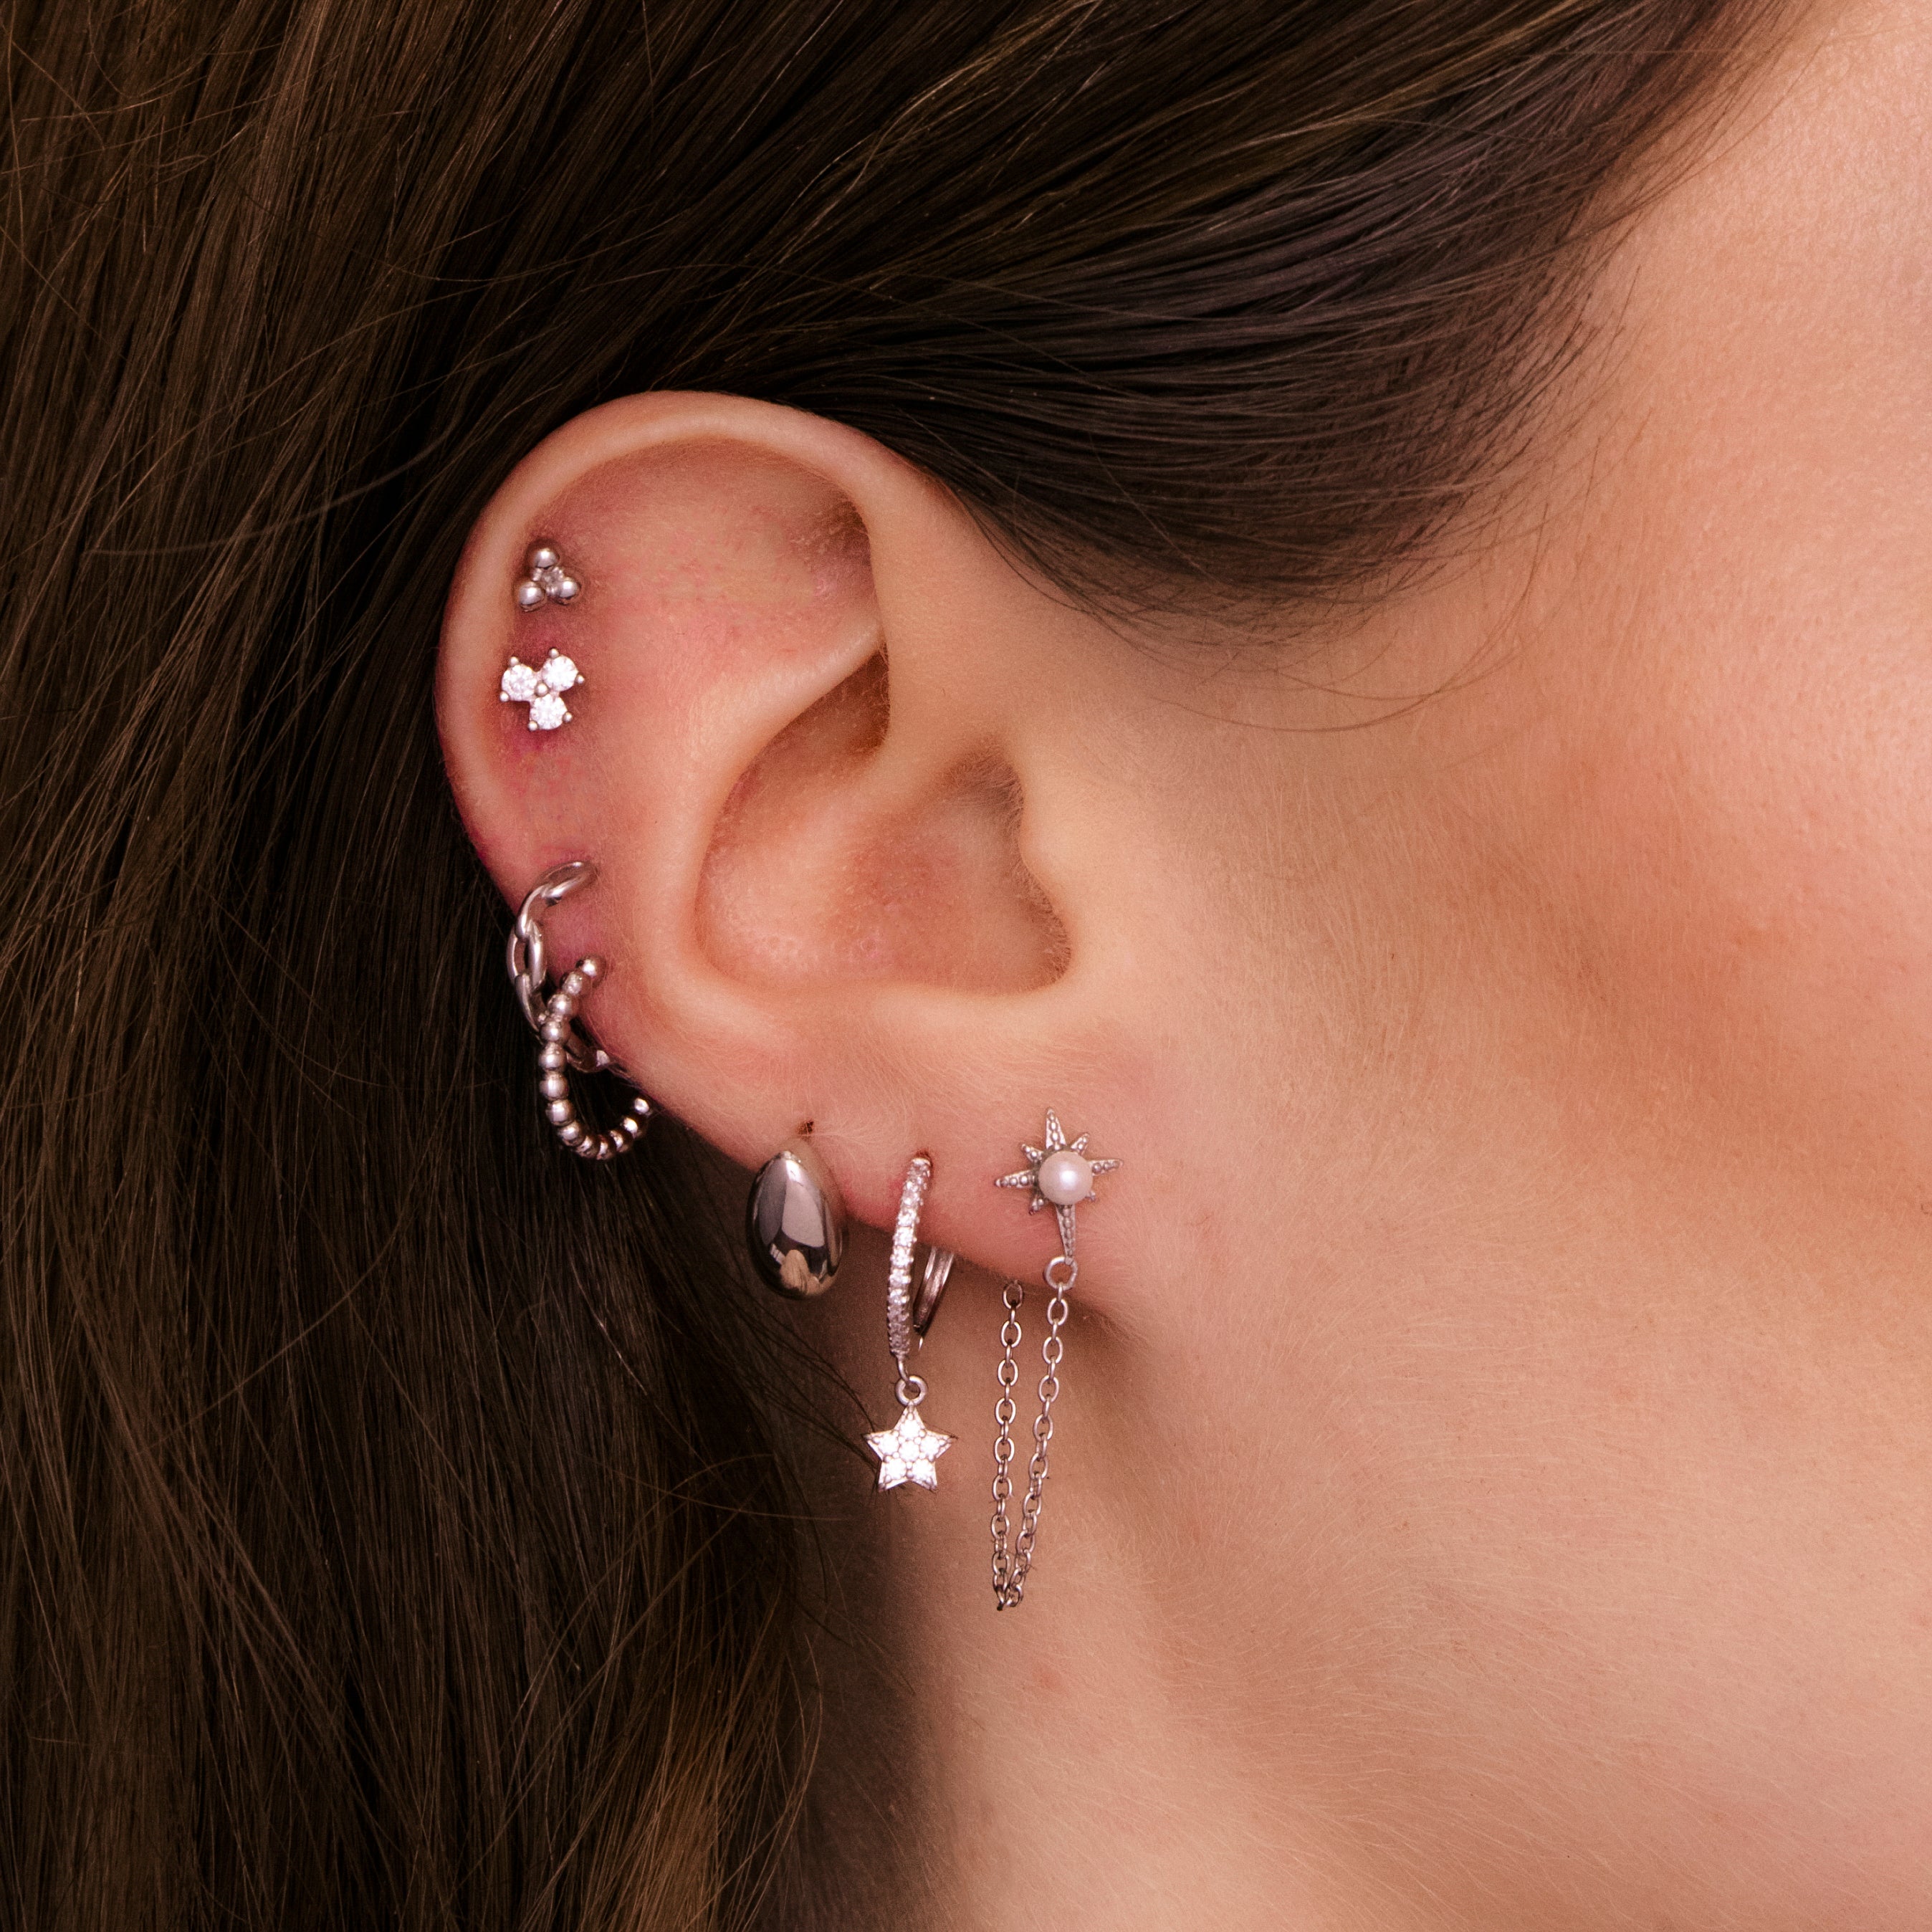 Star Sapphire Hoop Earrings